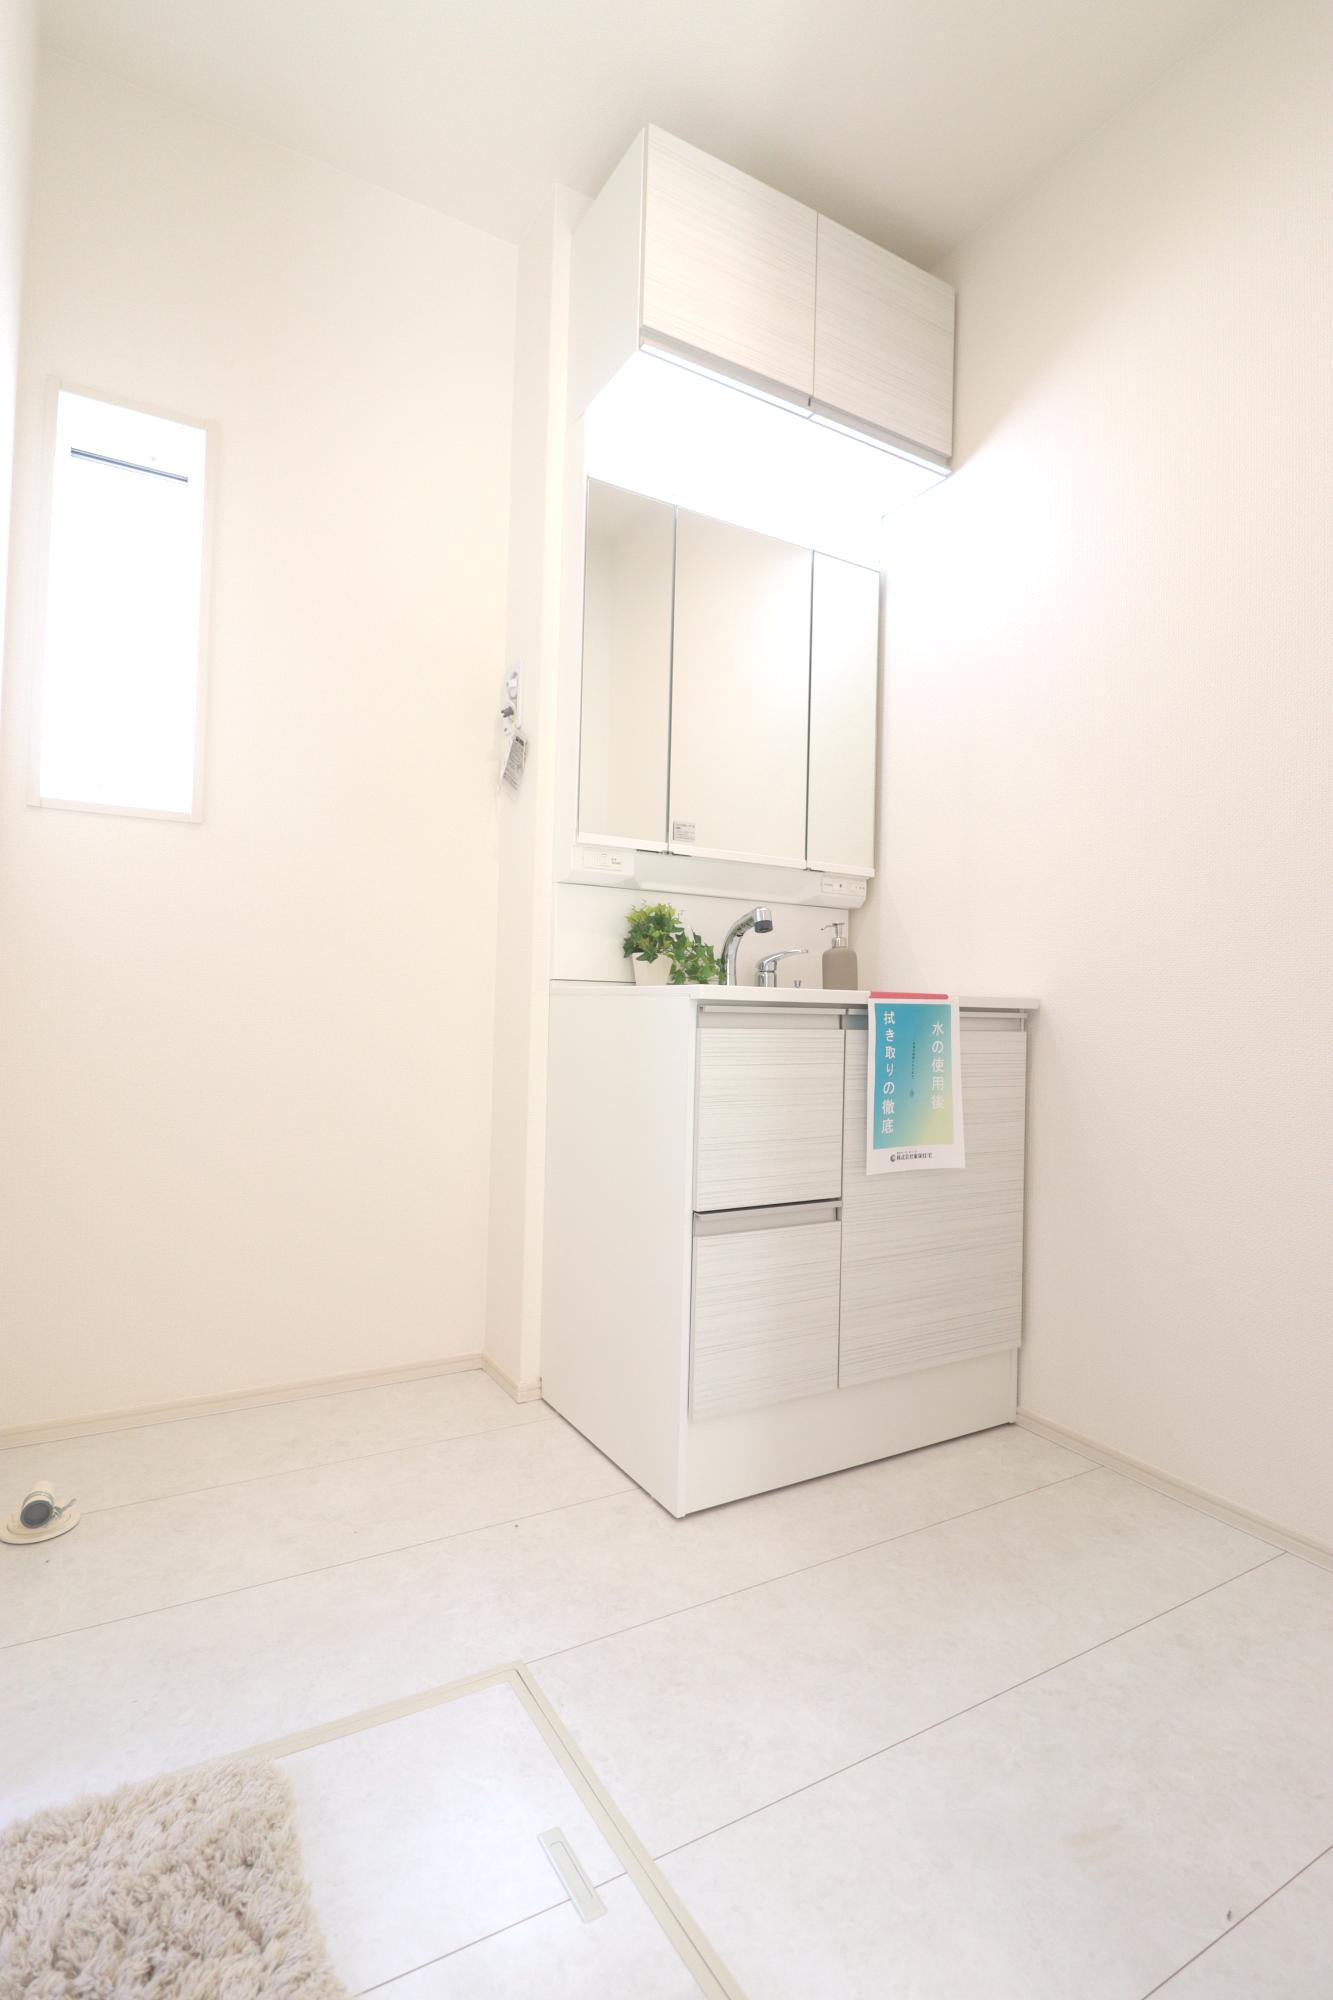 【4号棟】収納力と機能性に優れたシャワー付き洗面化粧台! 鏡の内側にも収納スペースがあるので、細かいものも整理しやすいです。